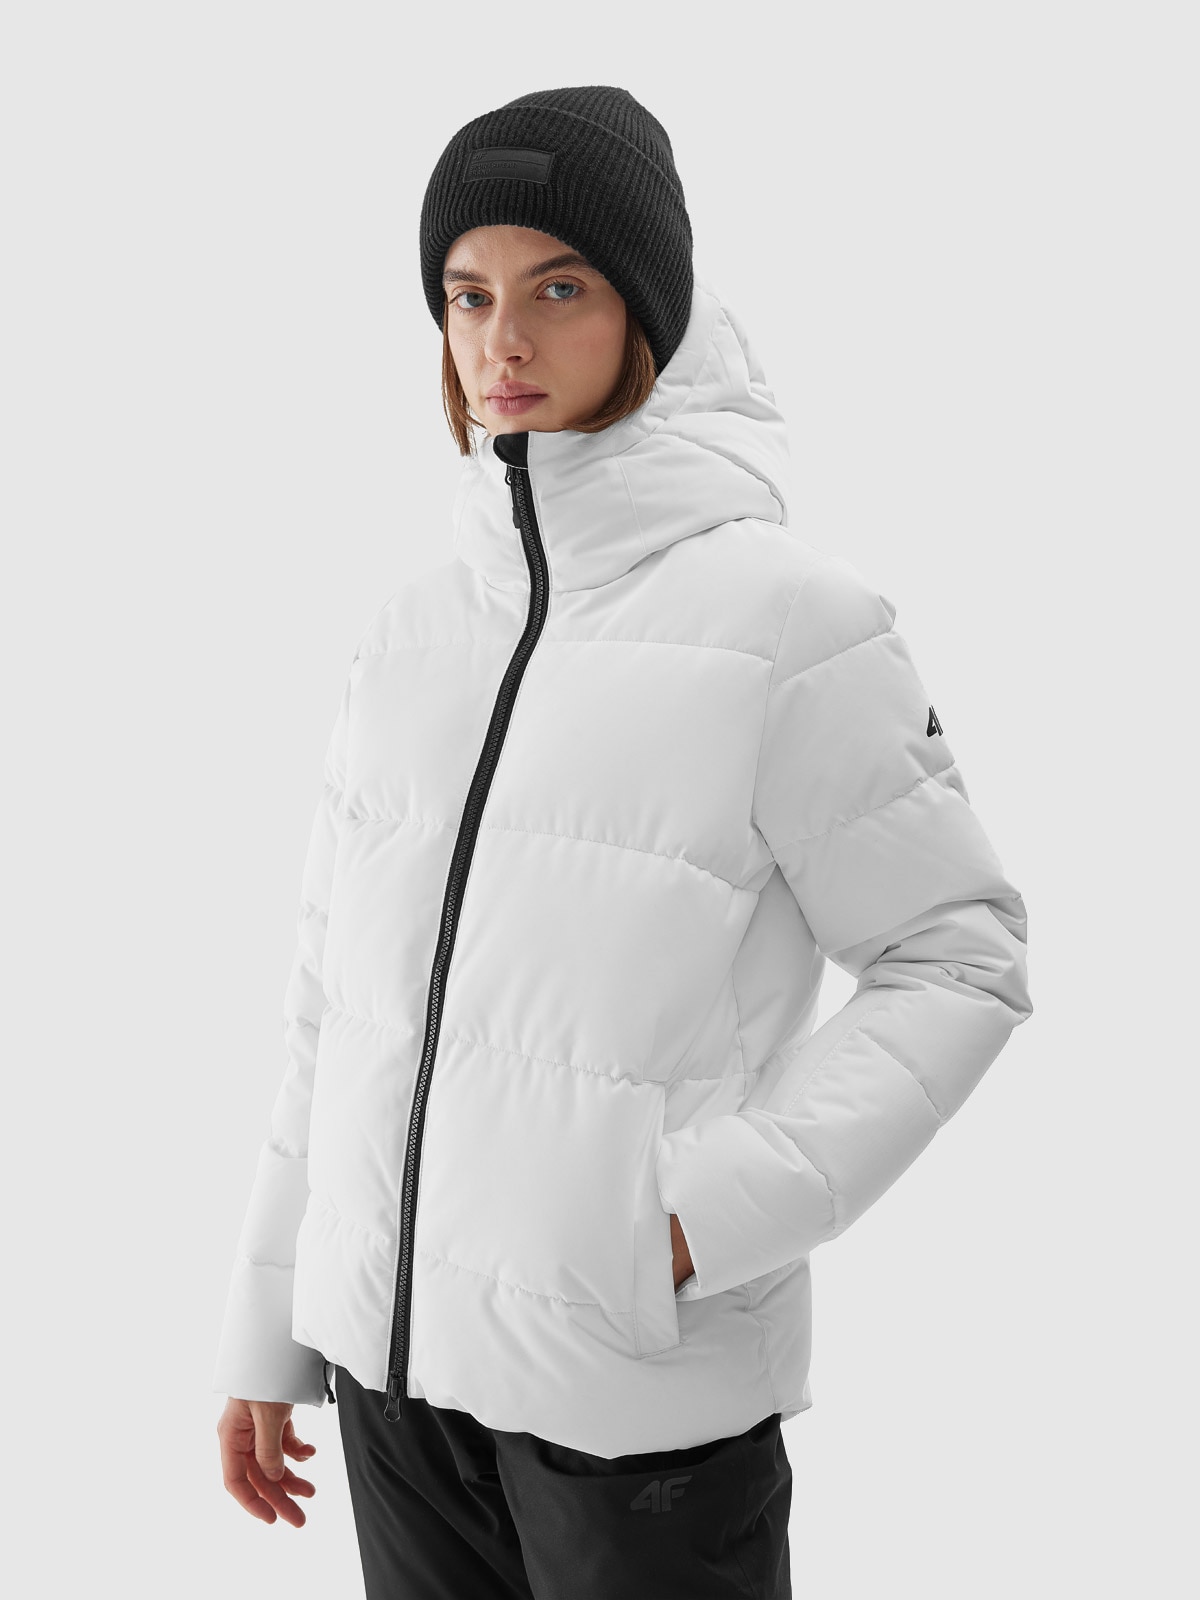 Dámská lyžařská péřová bunda membrána 5000 - bílá